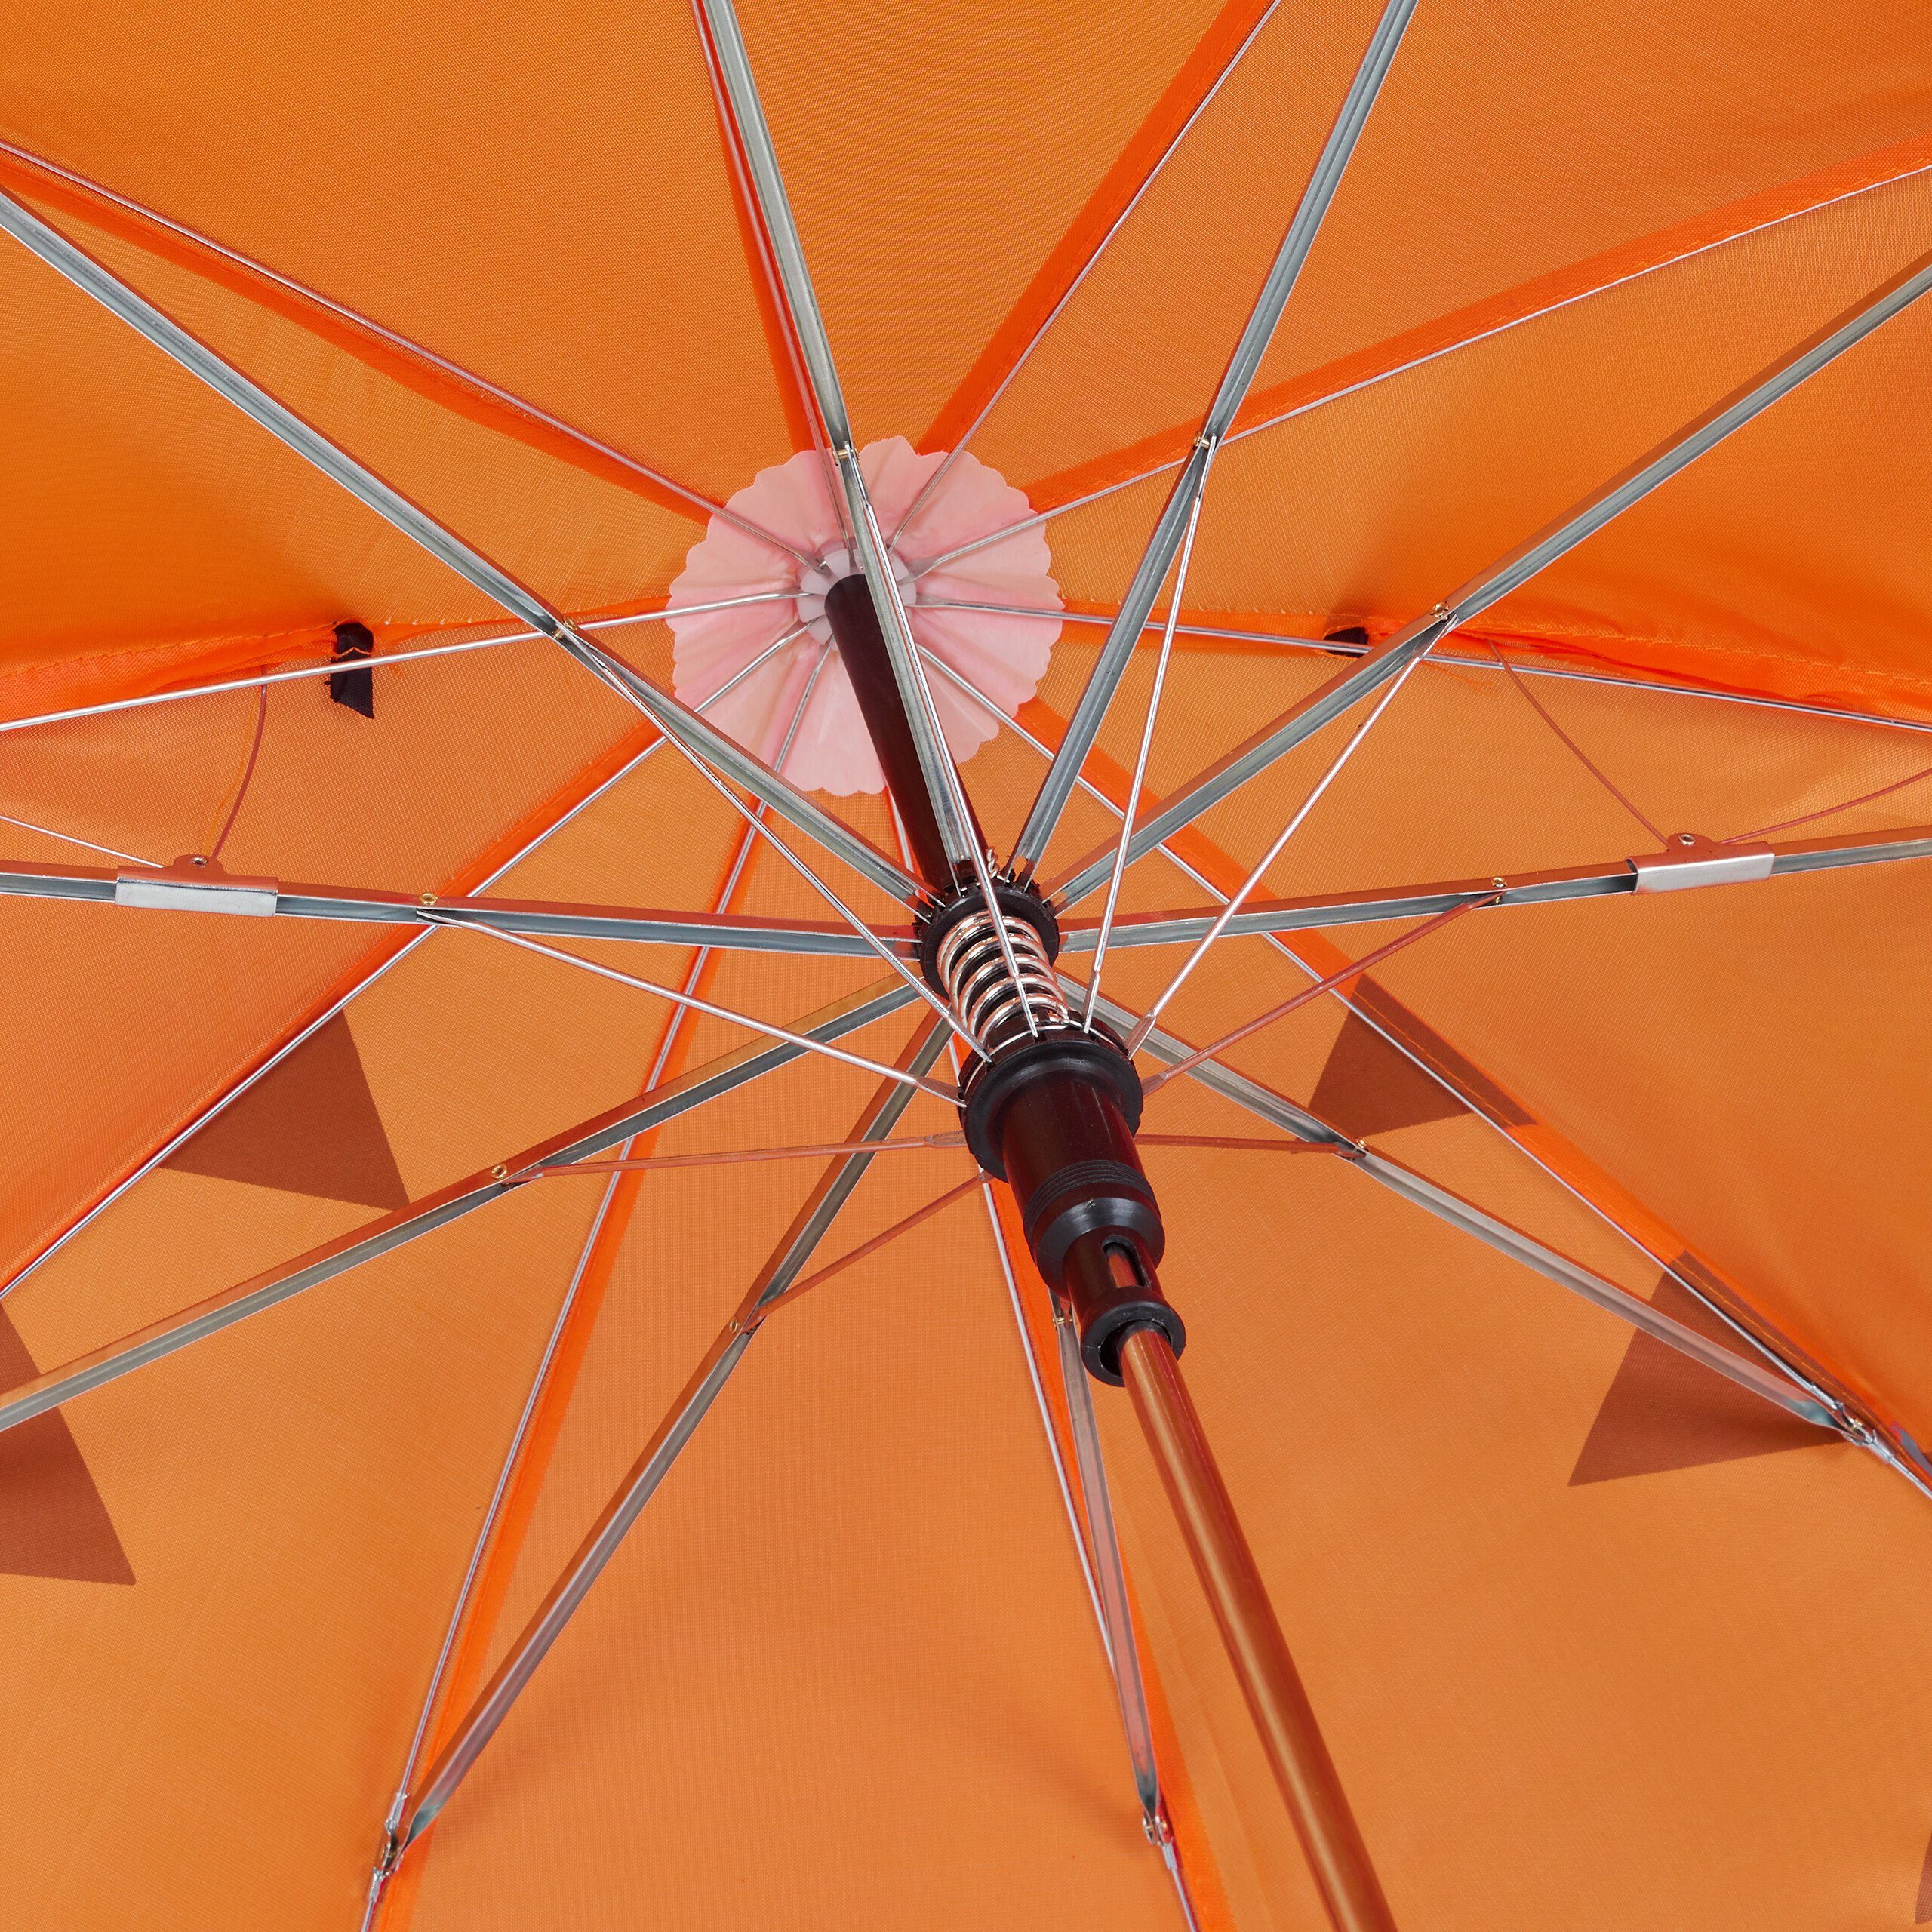 relaxdays Regenschirm "Tiger" Stockregenschirm Kinder